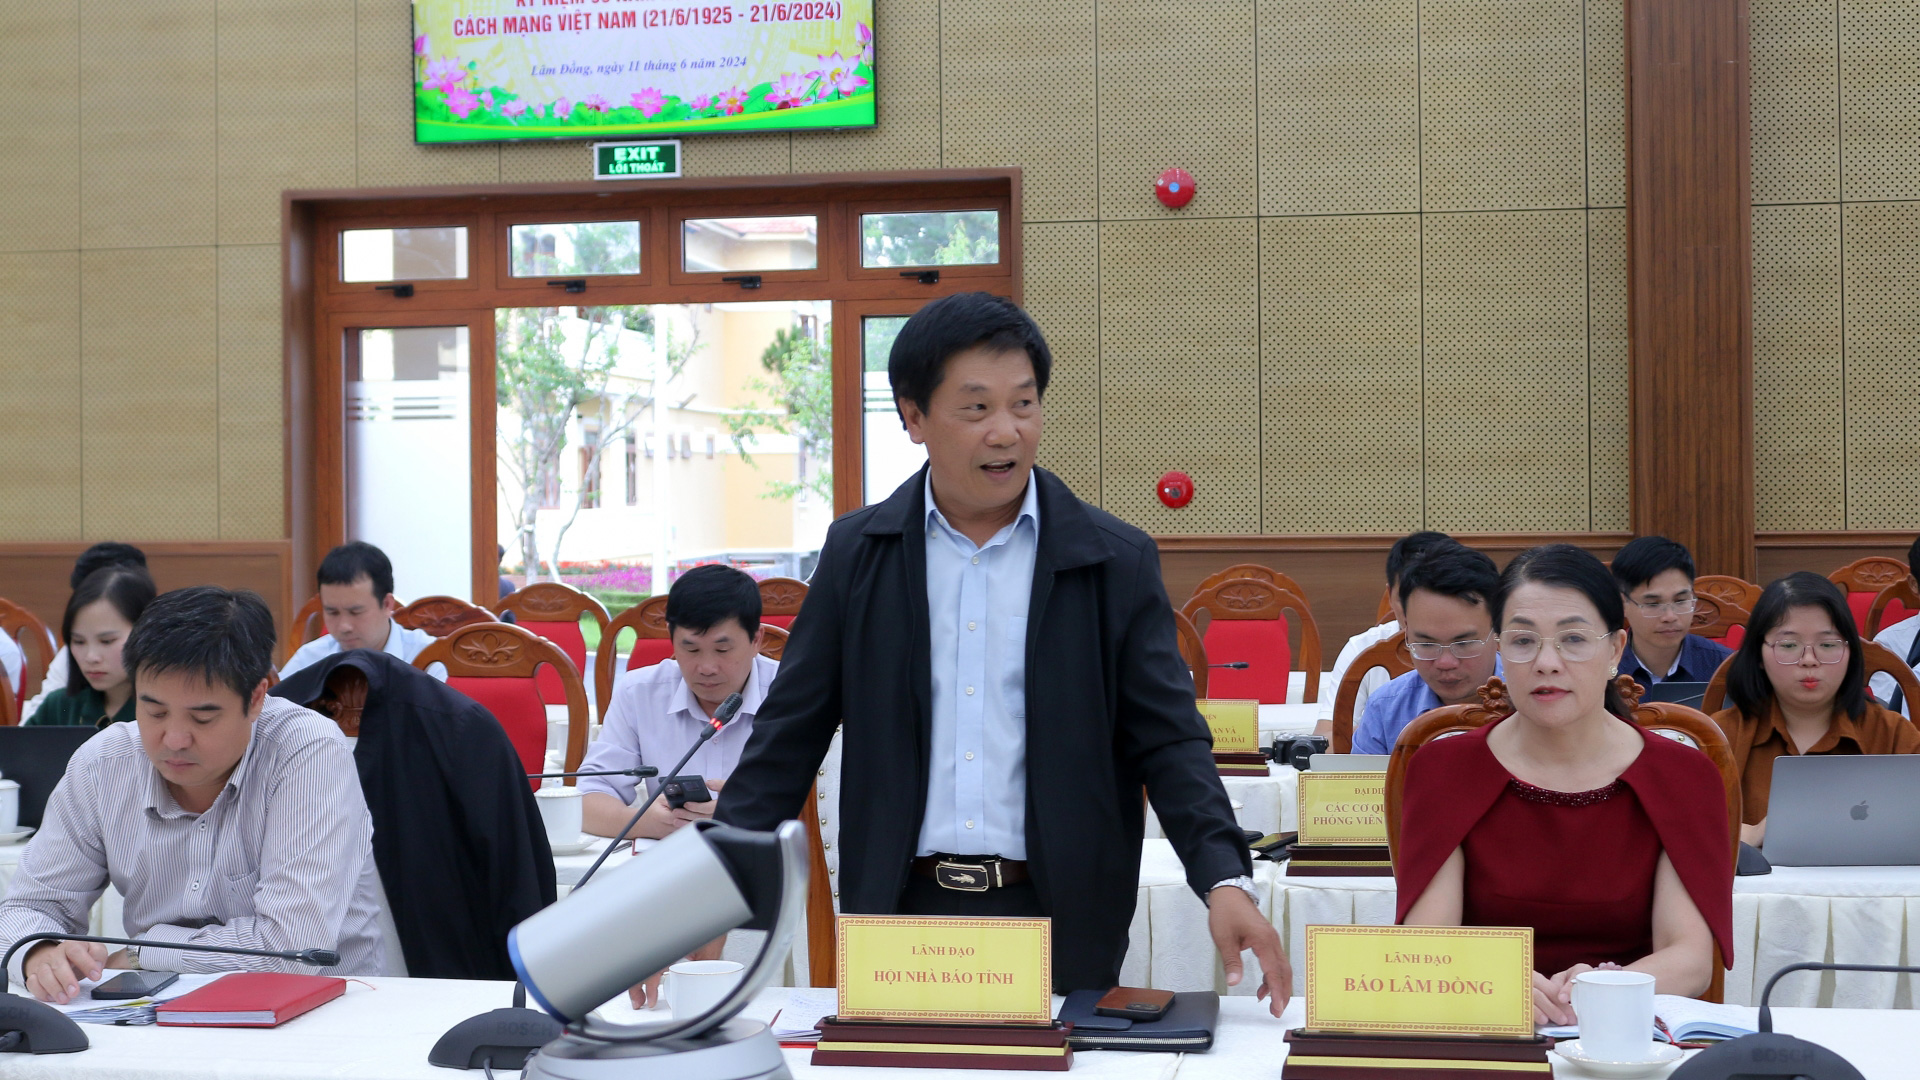 Chủ tịch Hội Nhà báo tỉnh Lâm Đồng Lê Văn Tòa thay mặt đội ngũ những người làm báo trên địa bàn tỉnh cảm ơn sự quan tâm của lãnh đạo tỉnh đến hoạt động của báo chí